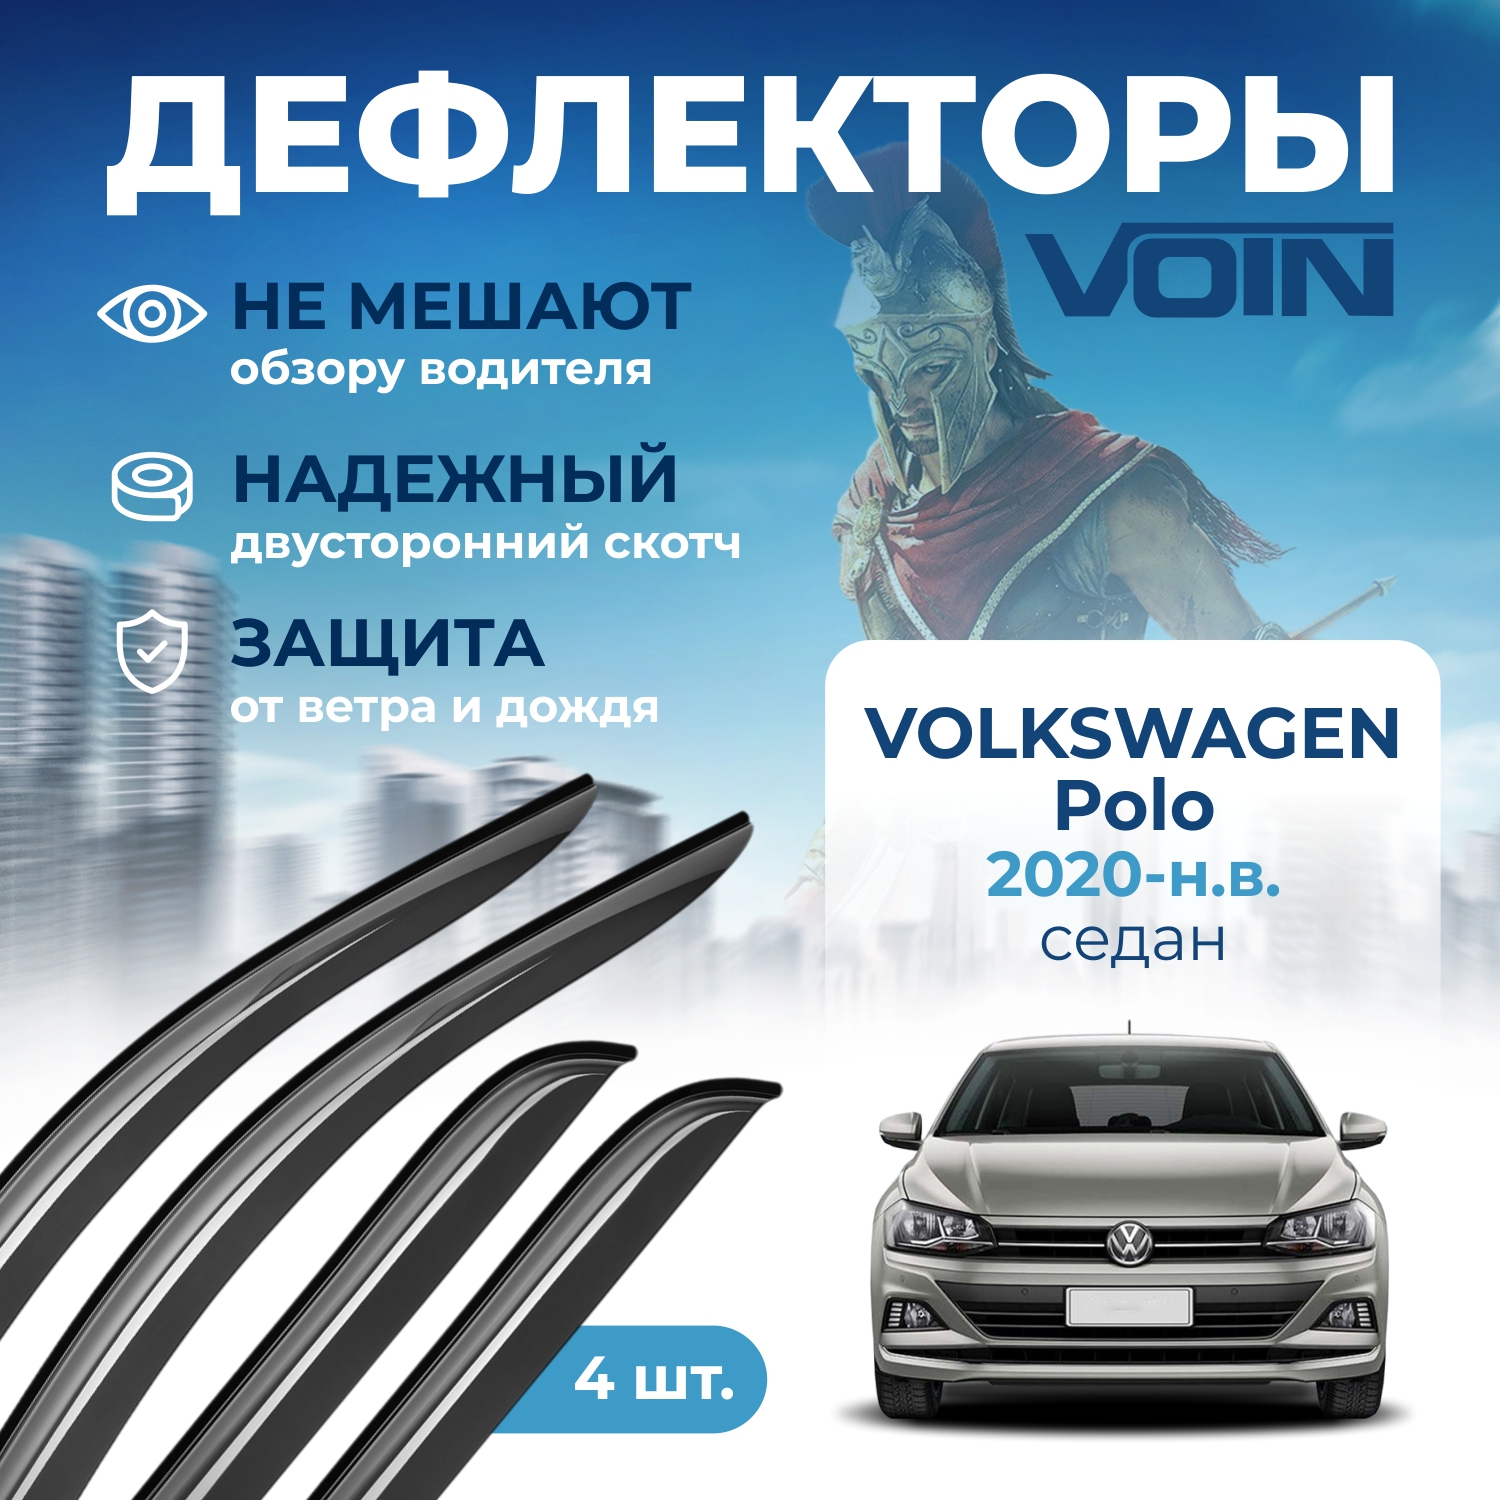 Дефлекторы боковых окон Voin на авто Volkswagen Polo 2020-н.в., седан, накладные, к-т 4 шт